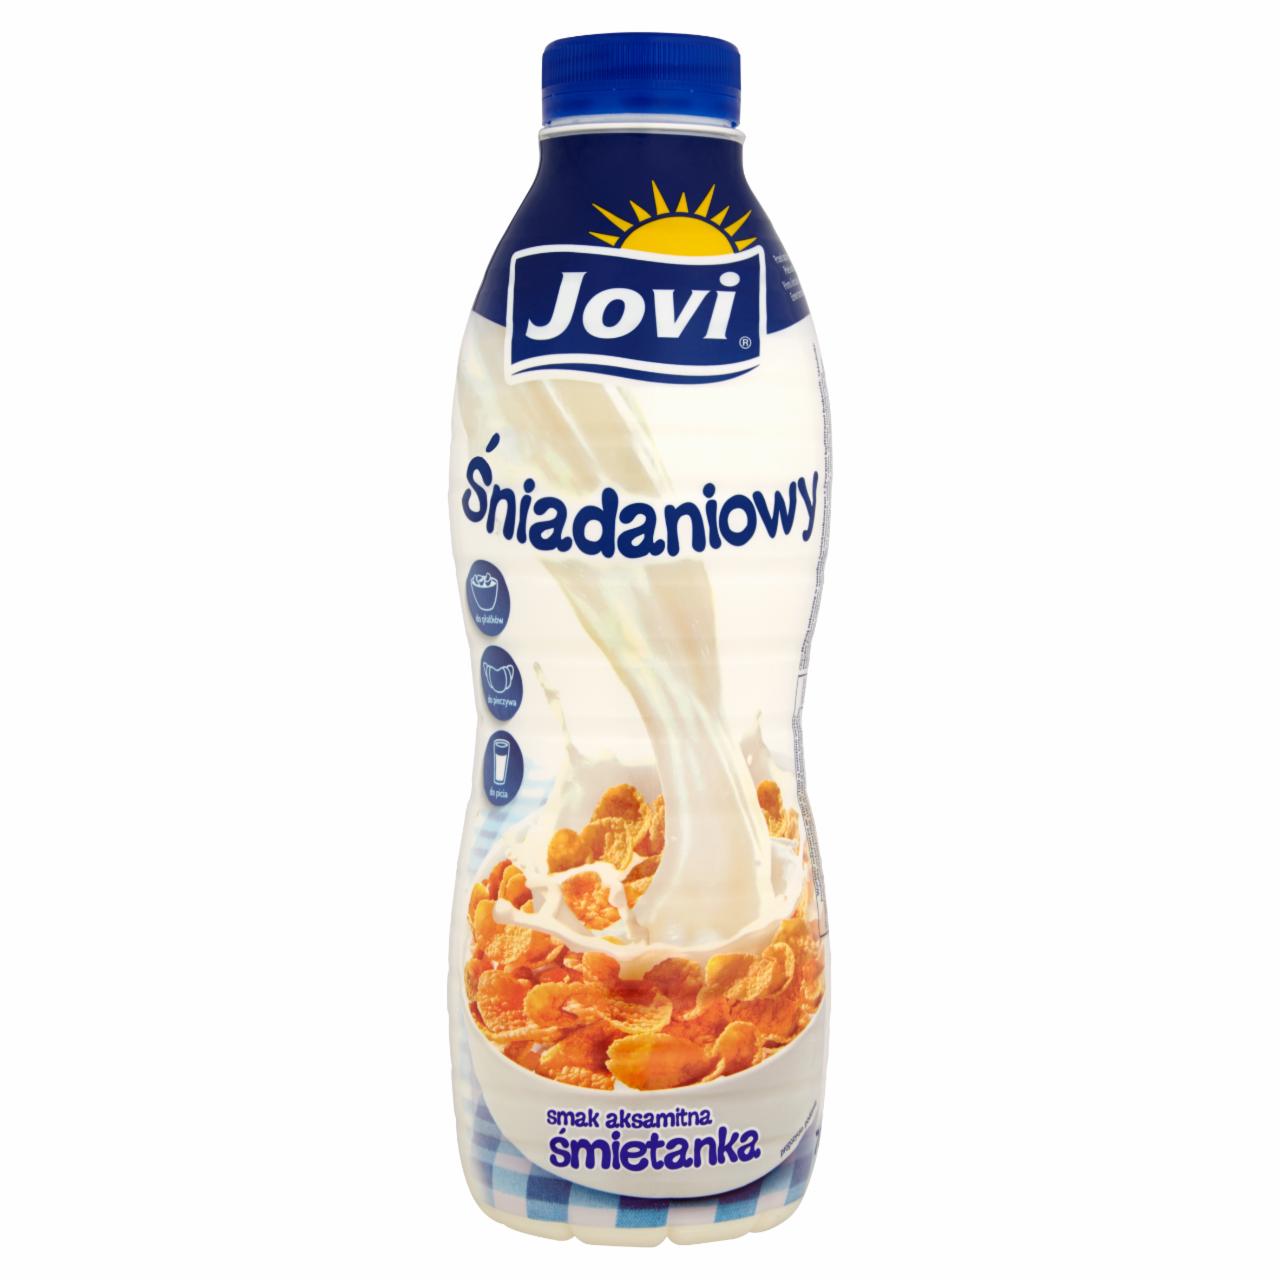 Zdjęcia - Jovi Śniadaniowy Napój mleczny smak aksamitna śmietanka 700 g